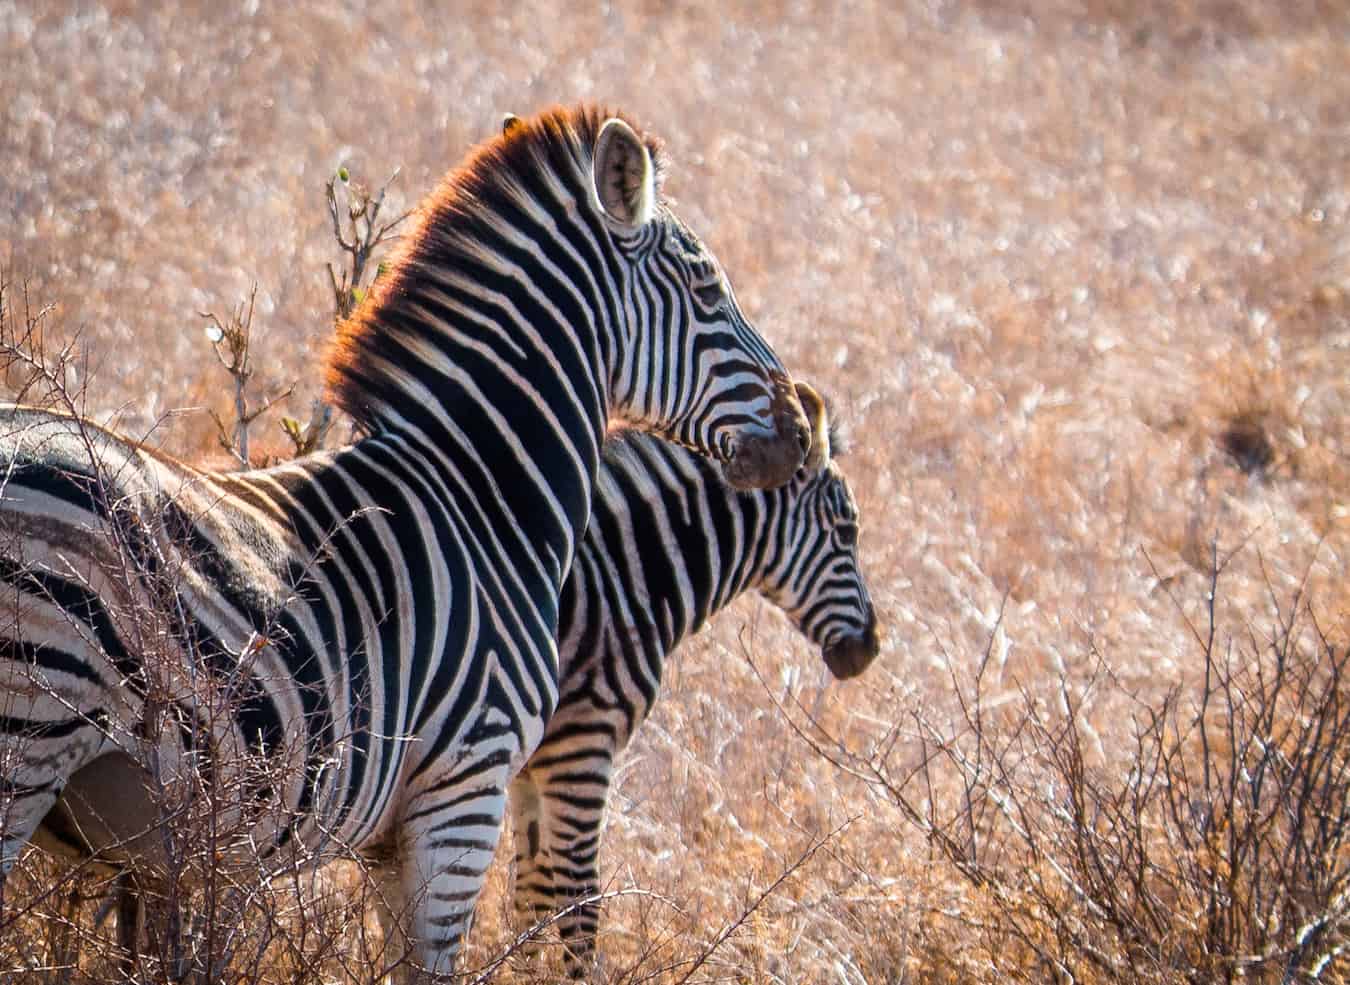 Mama & Baby Zebra in Kruger National Park